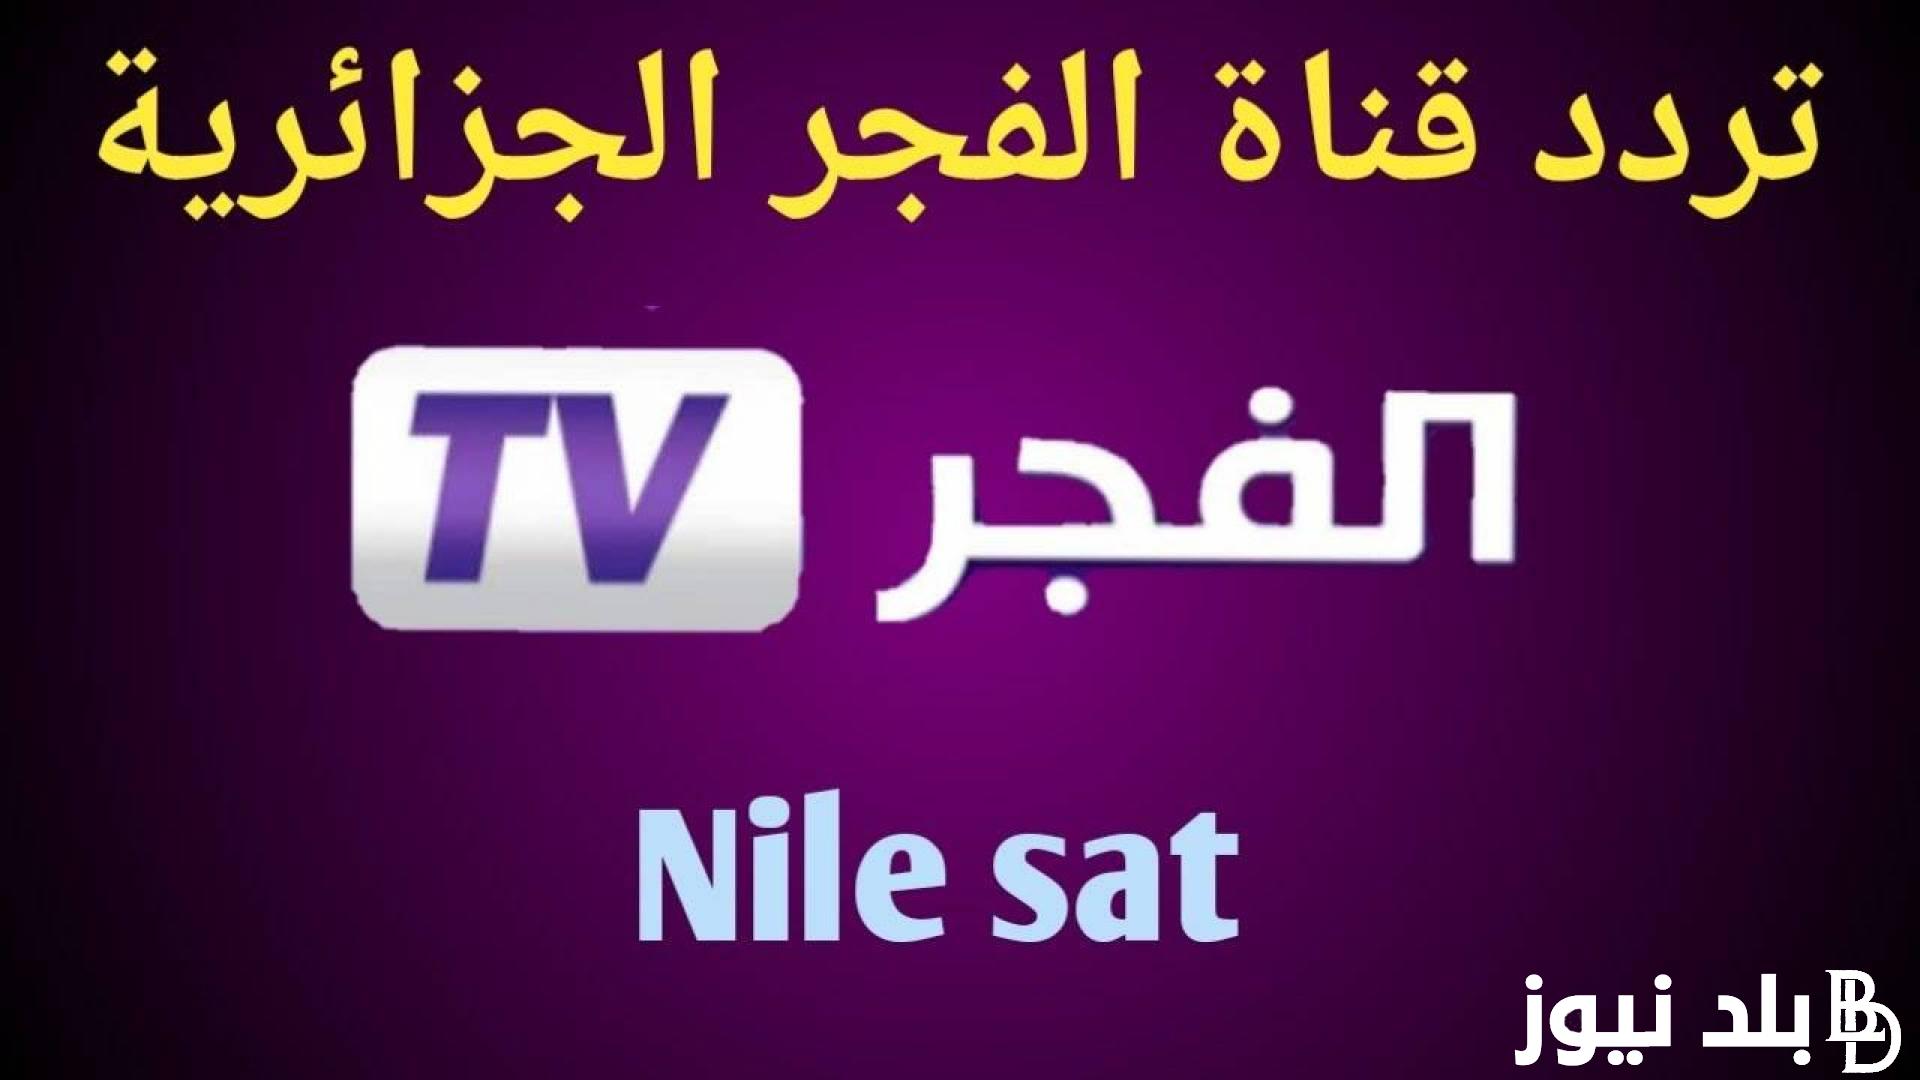 إلتقط تردد قناة الفجر الجزائرية الناقلة لقيامة عثمان 136 على نايل سات وعرب سات بجودة HD